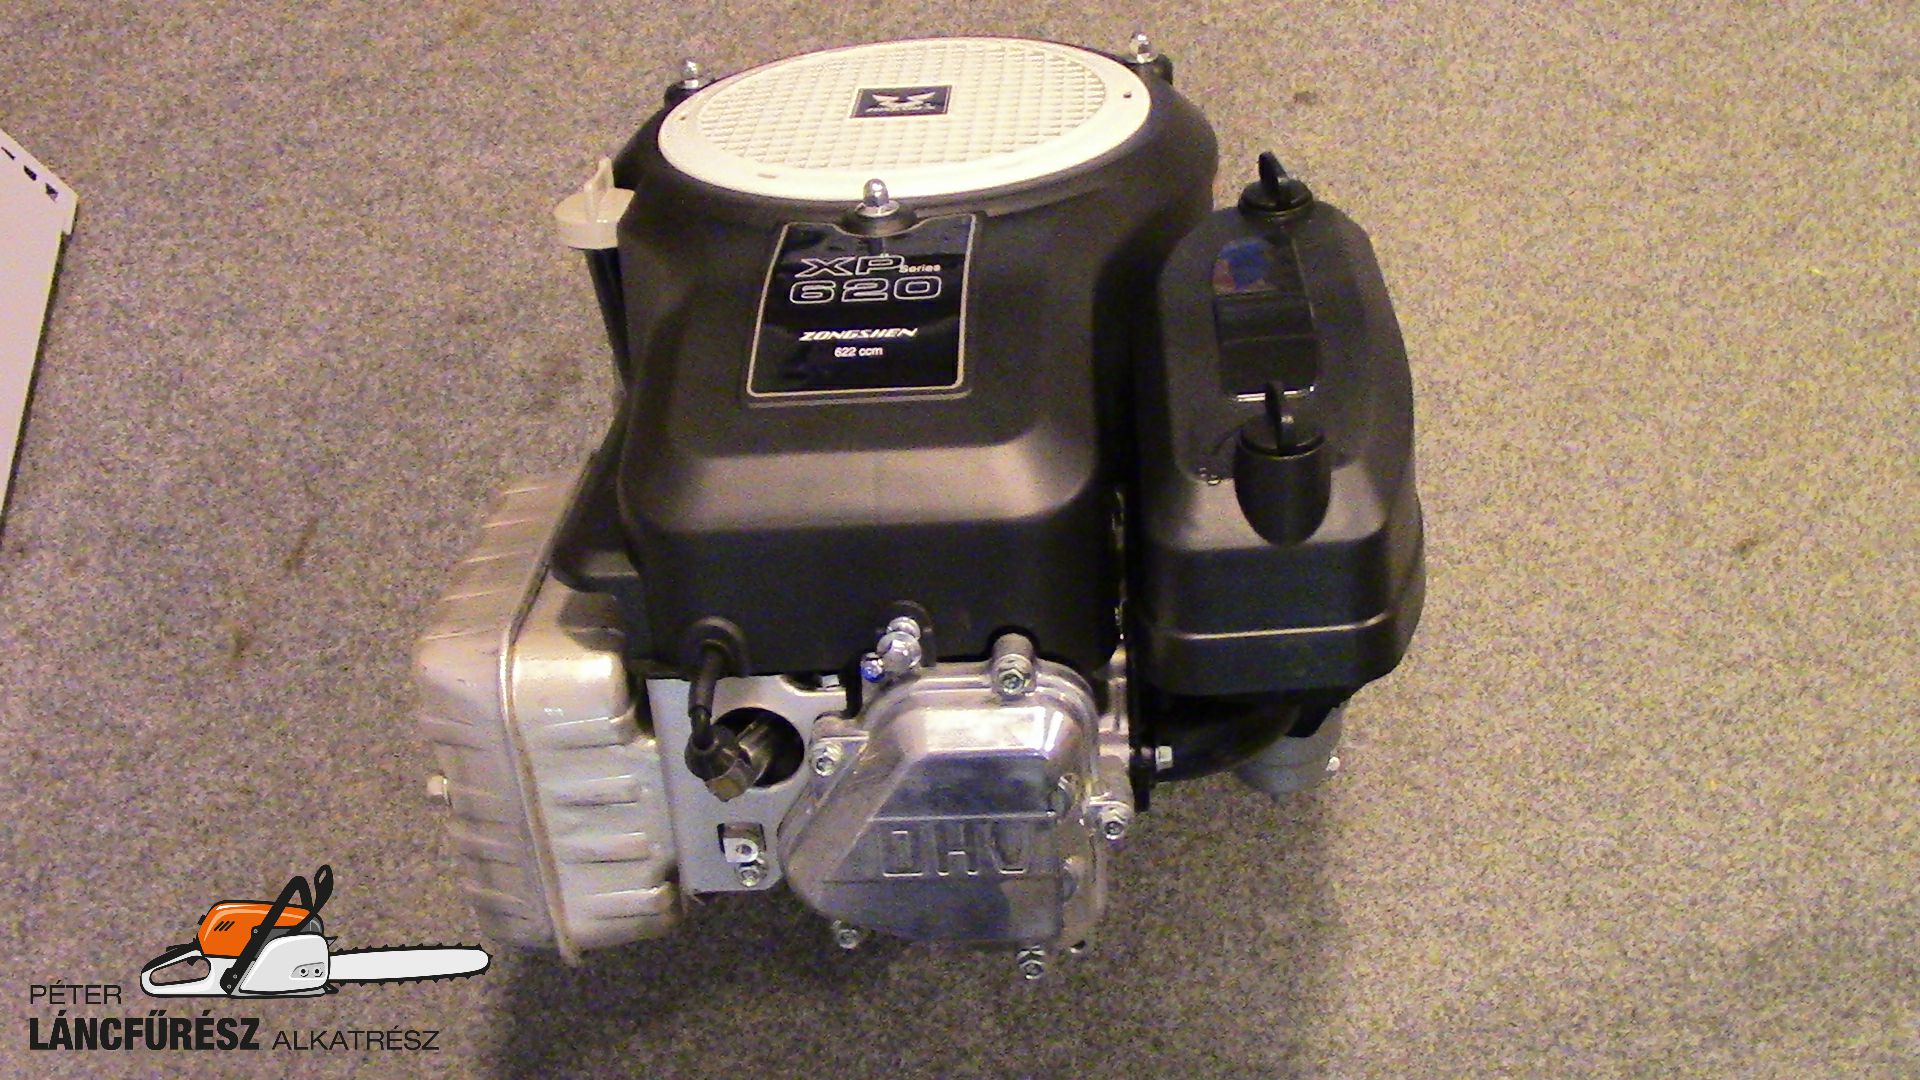 Meghajtó motor Zongshen XP620 622,5cc 17,6Le  függőleges tengely 25,4x80mm-87mm